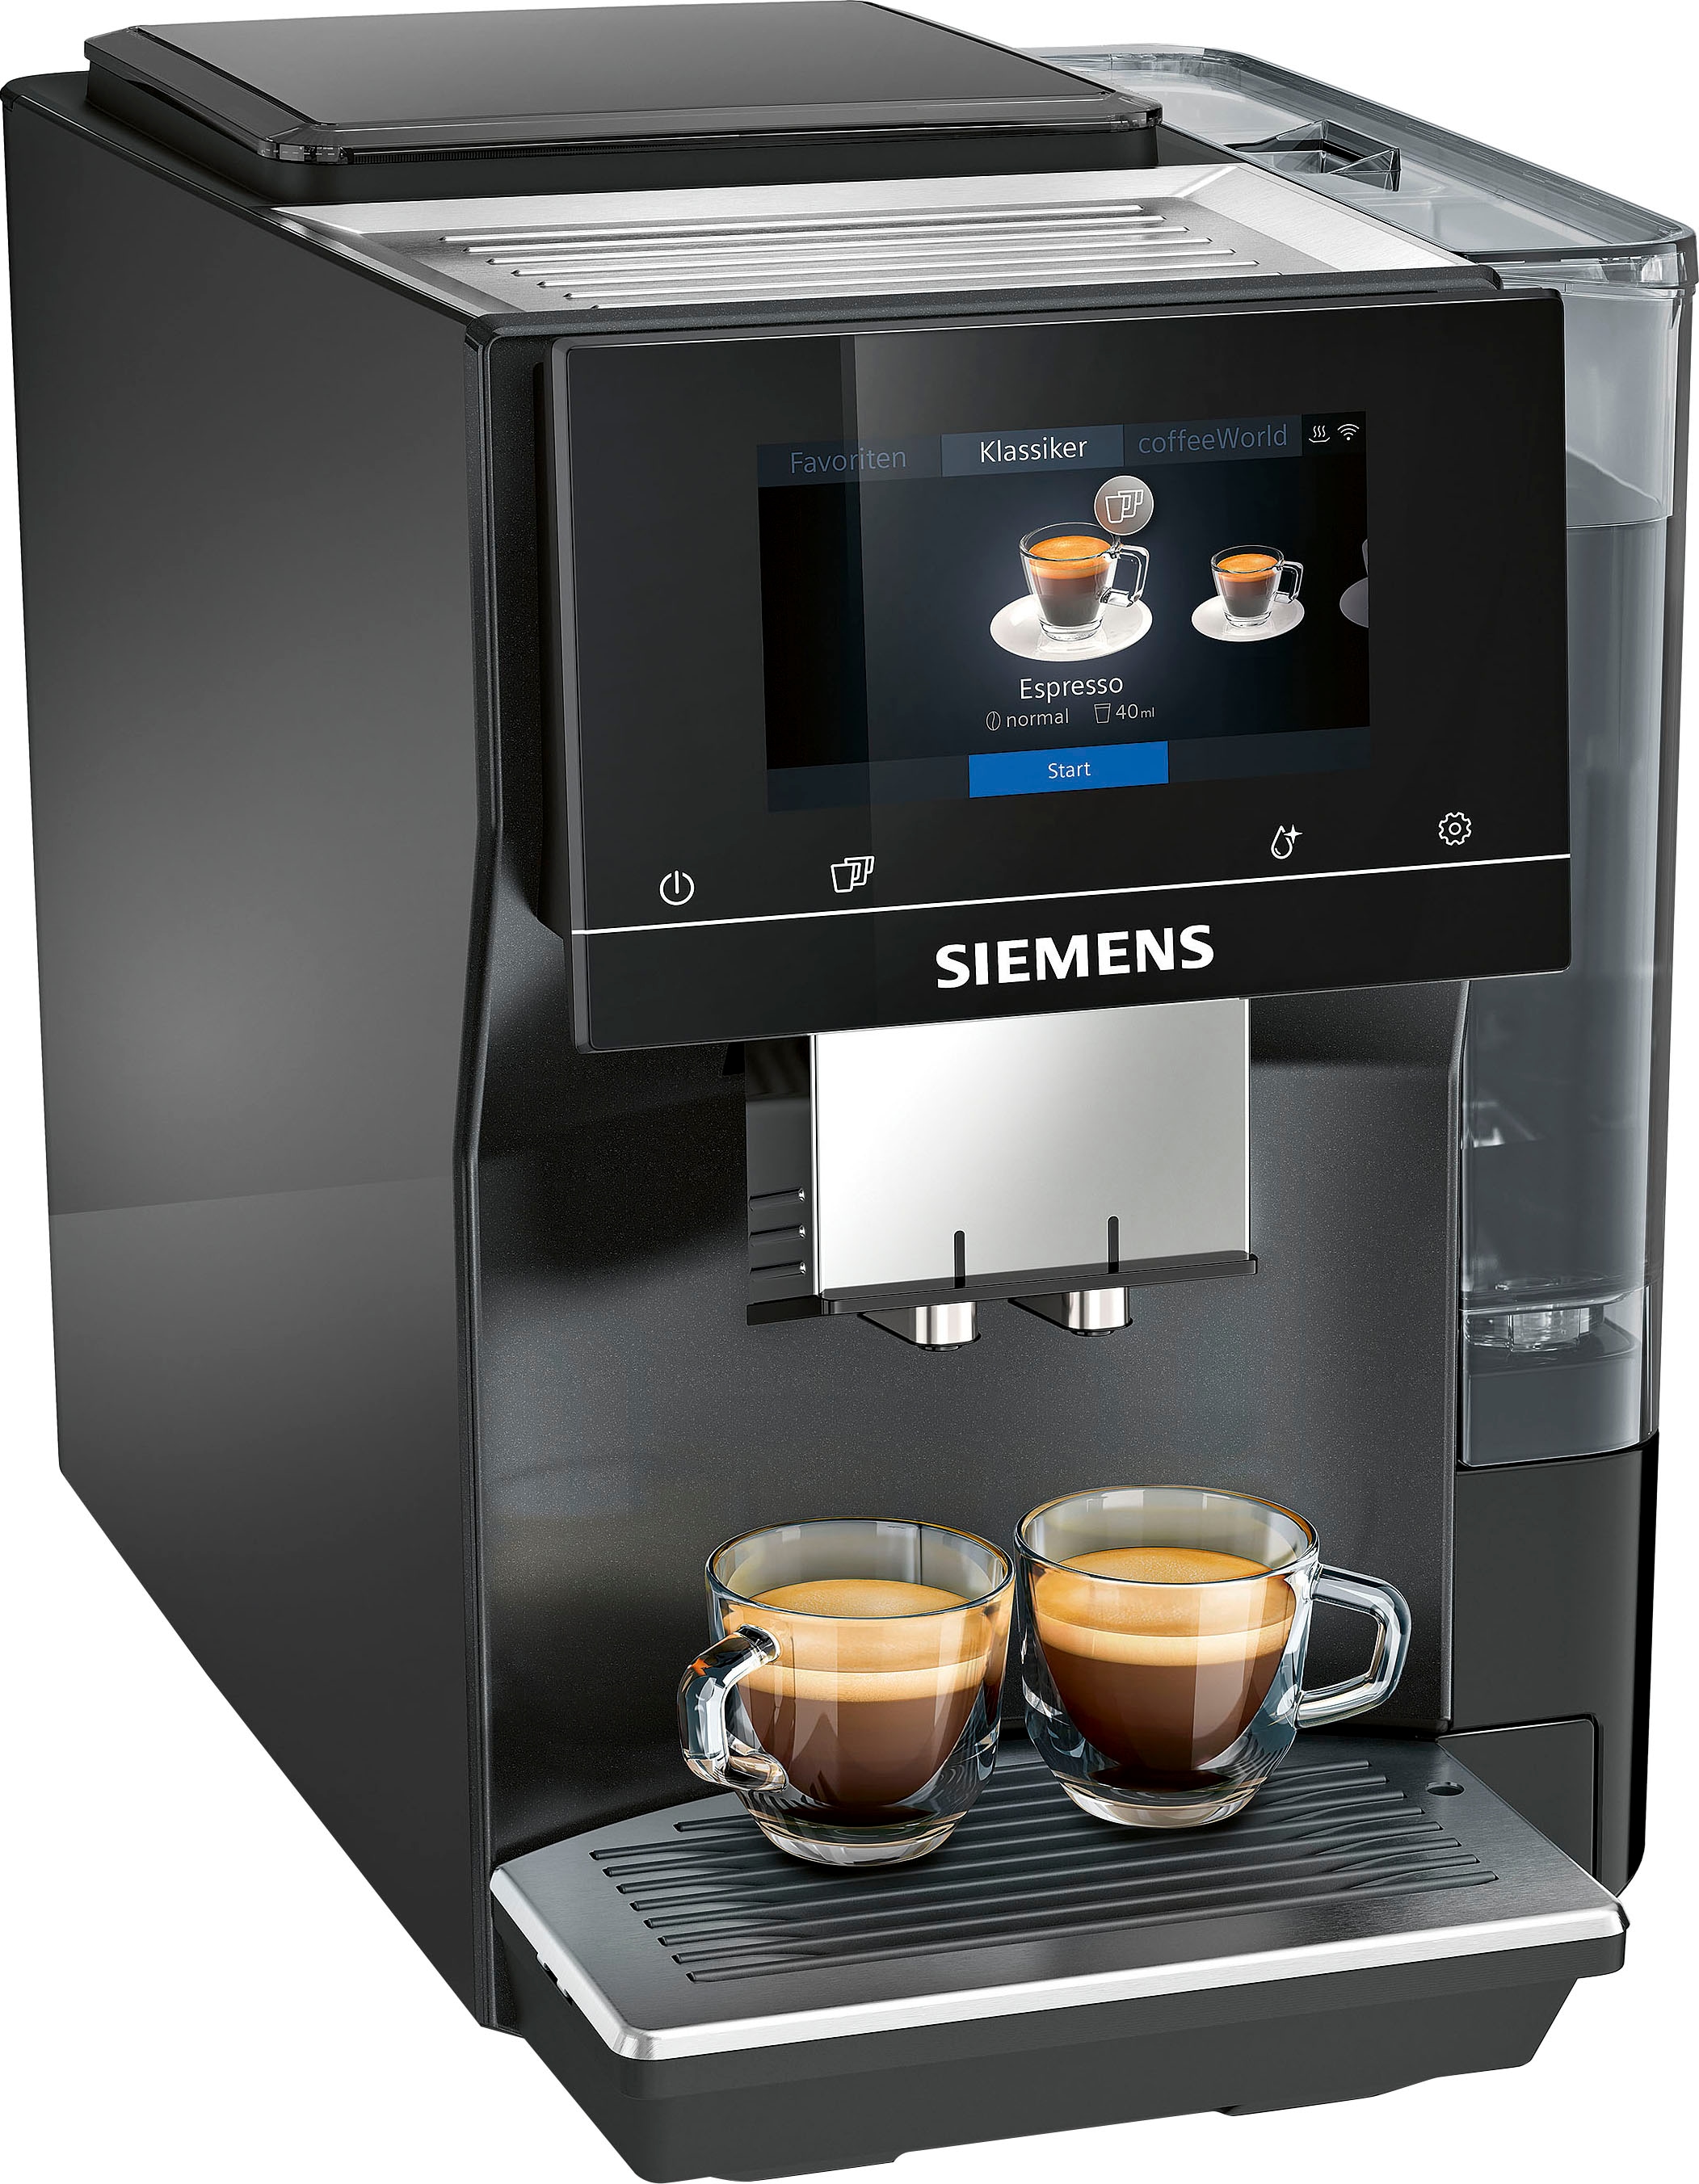 SIEMENS Kaffeevollautomat classic Profile bis TP707D06«, 15 »EQ700 Full-Touch-Display, Milchsystem-Reinigung kaufen speicherbar